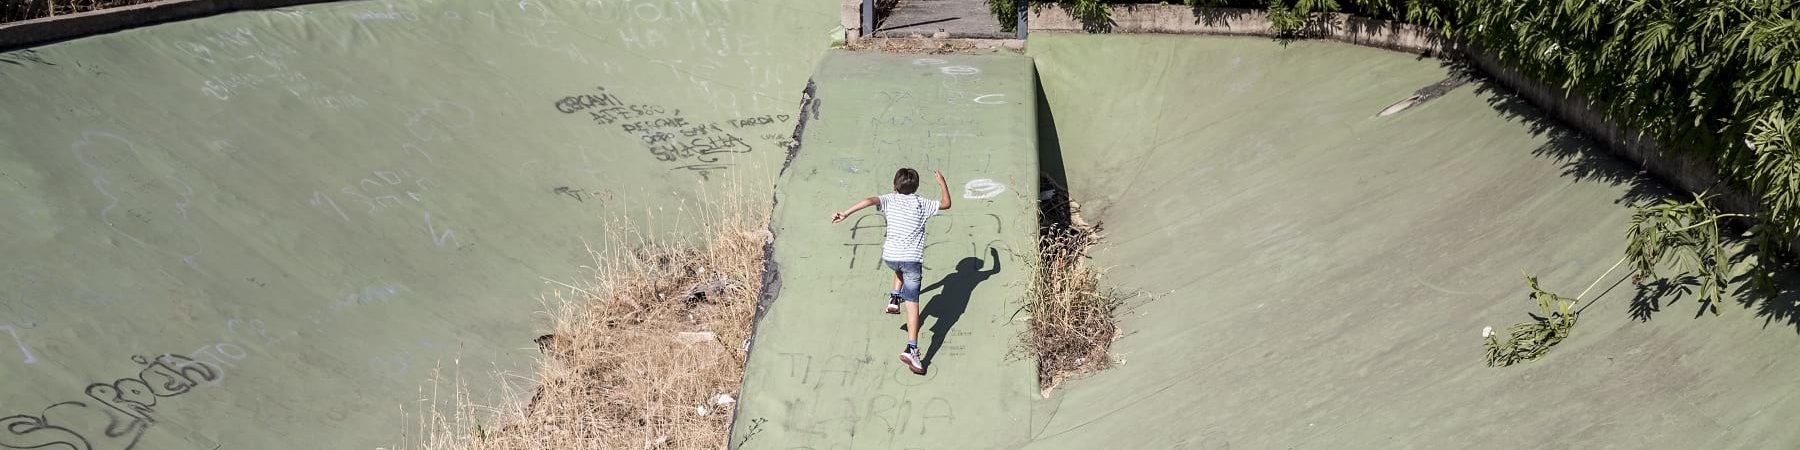 Bambino di spalle e in lontananza corre sulla salta di una pista da skate abbandonata